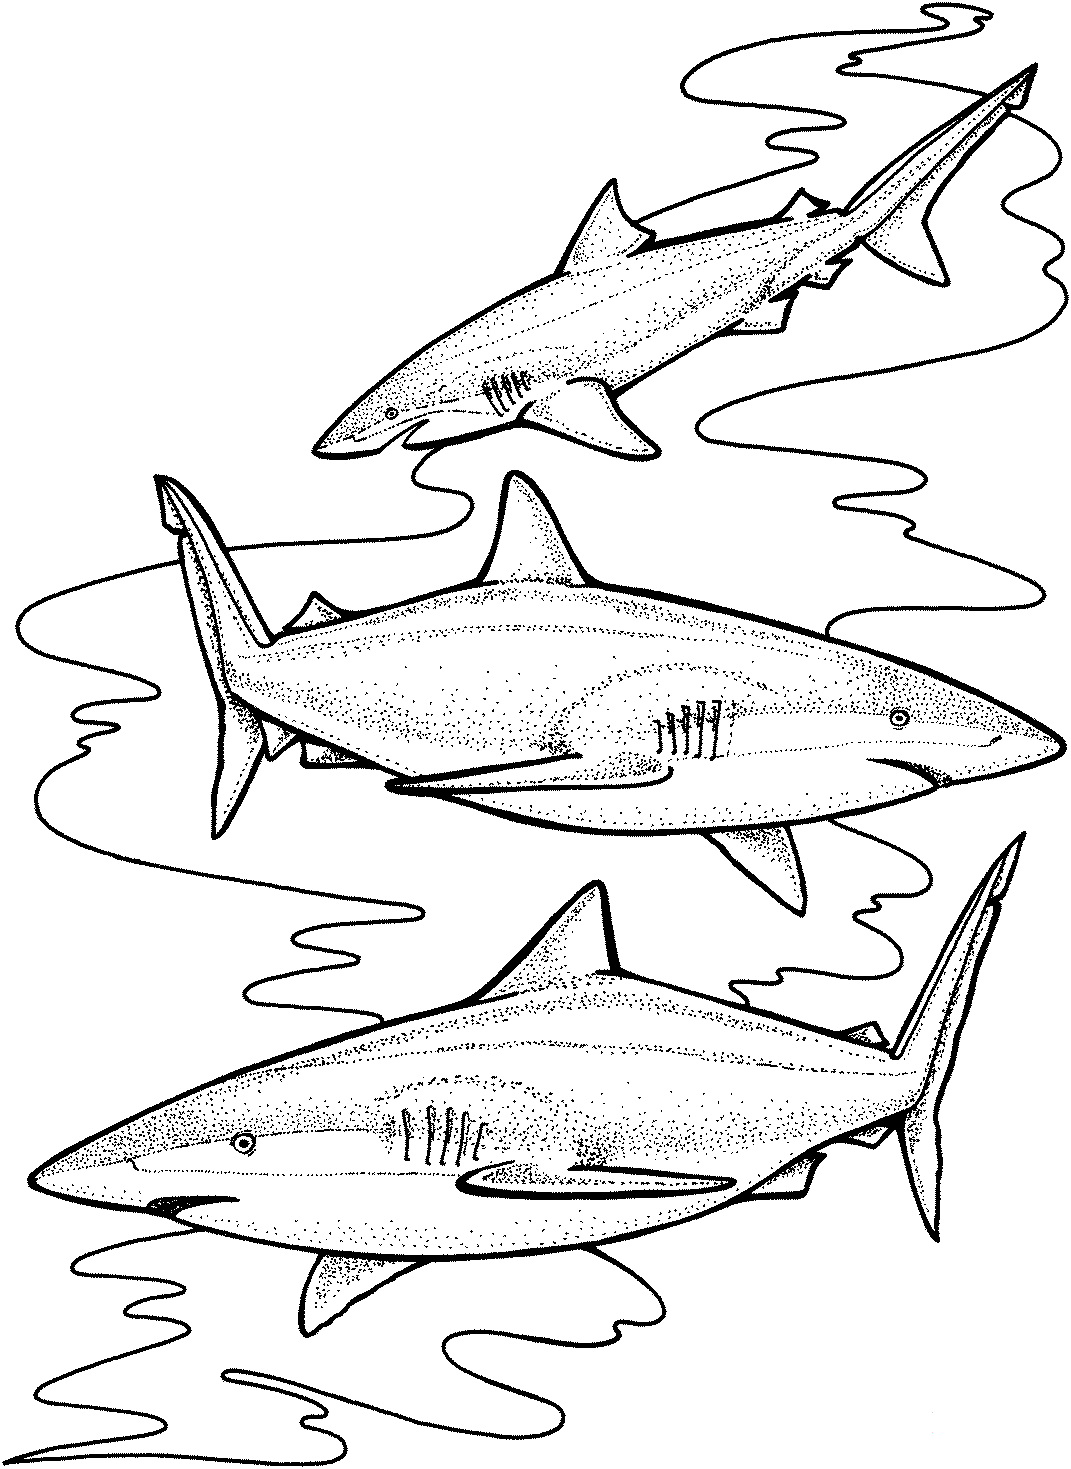 Trois requins tigres se spécialisent probablement dans certaines proies hautement disponibles de Shark